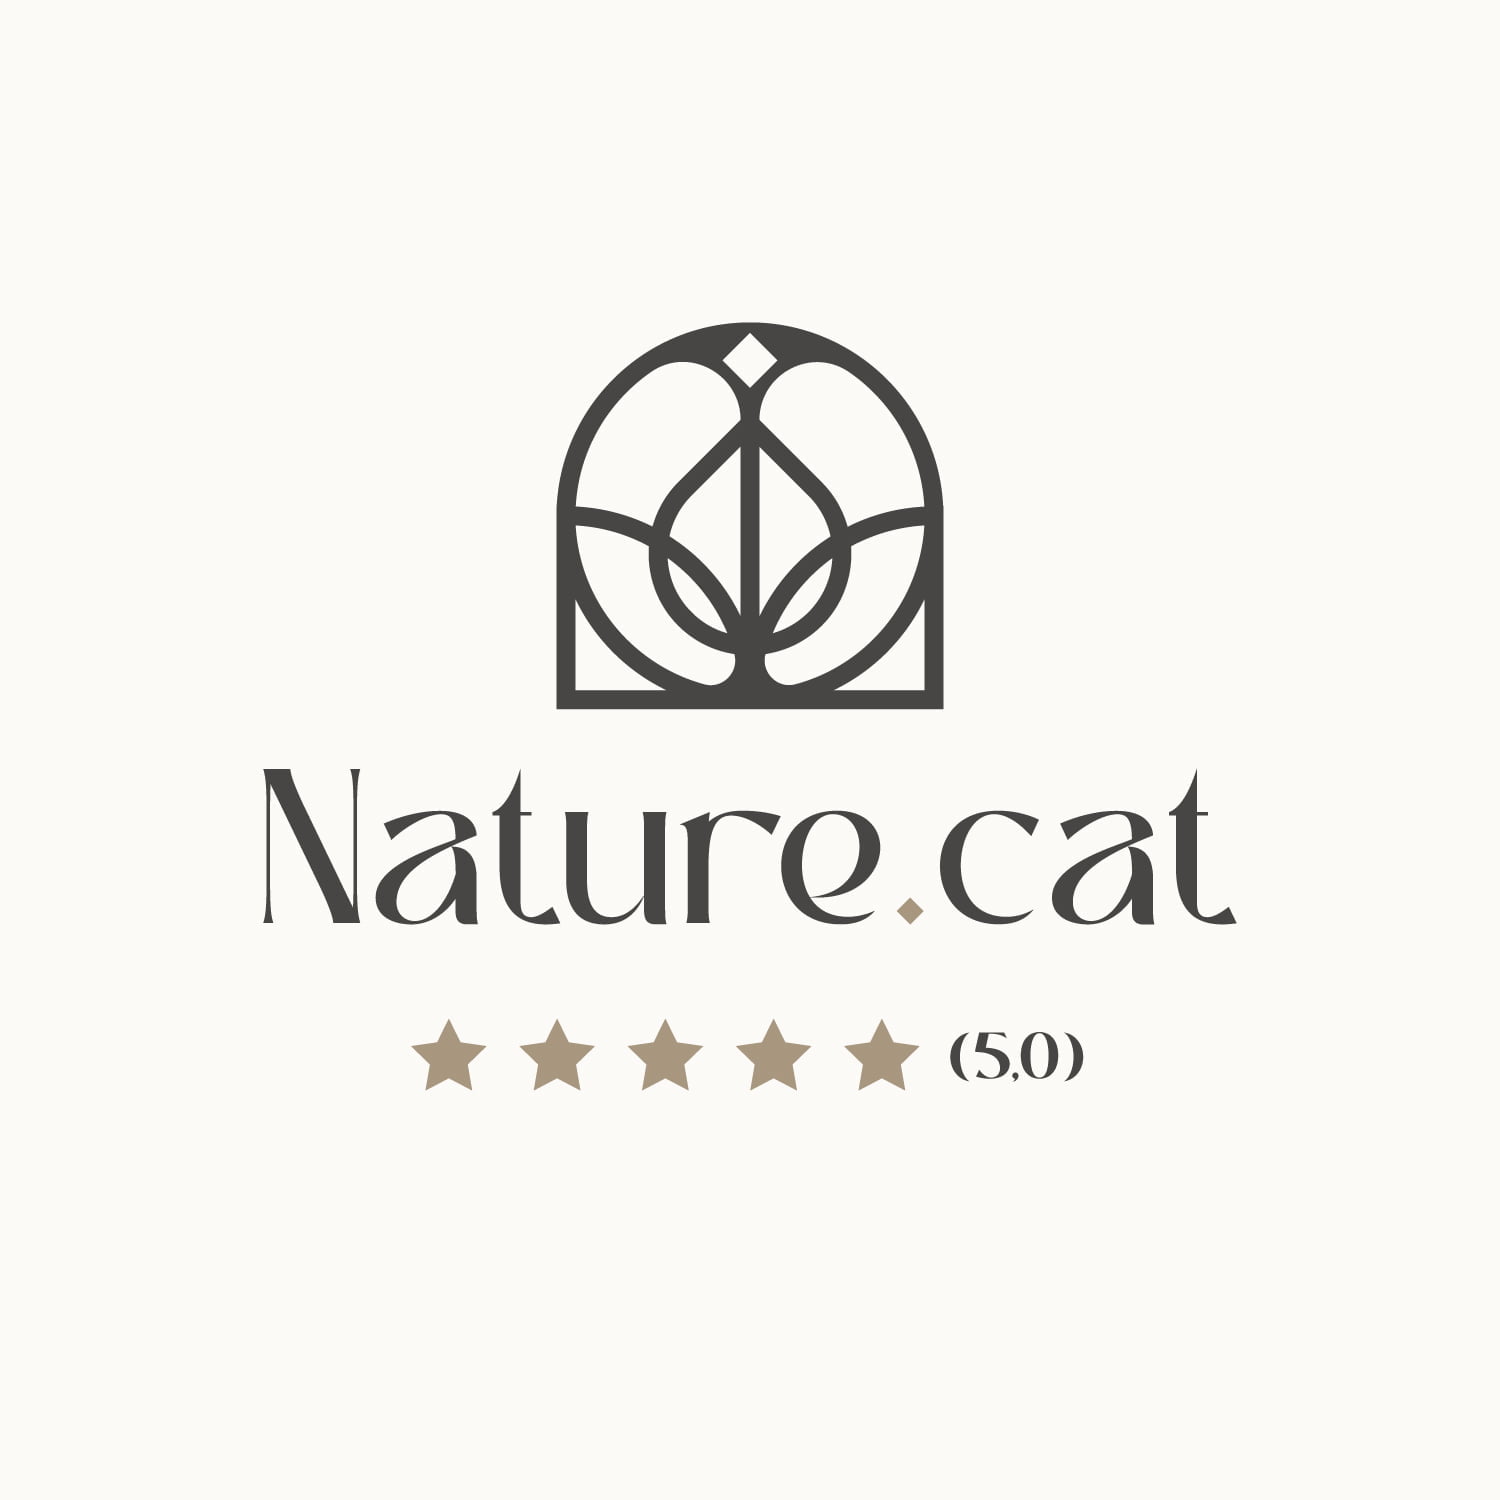 (c) Nature.cat